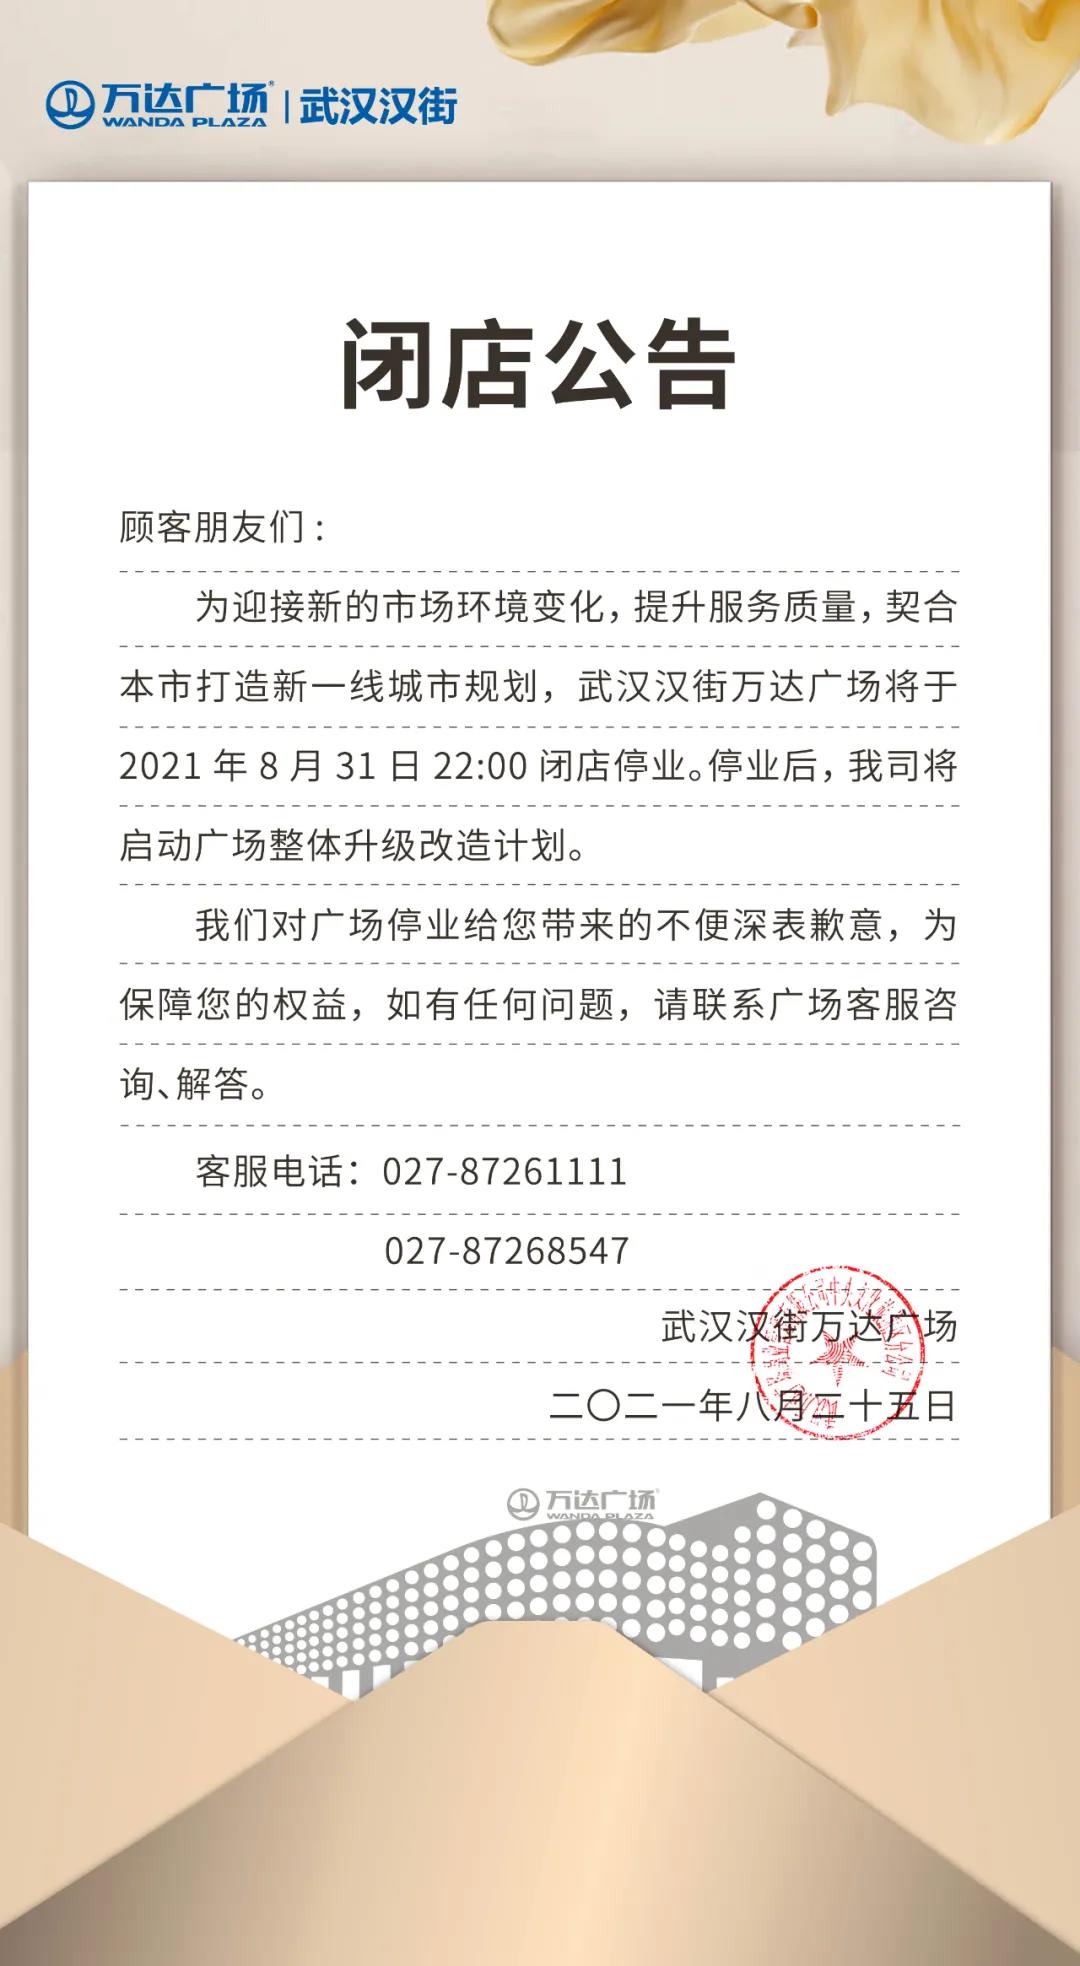 武汉汉街万达广场将于8月31日22：00闭店停业